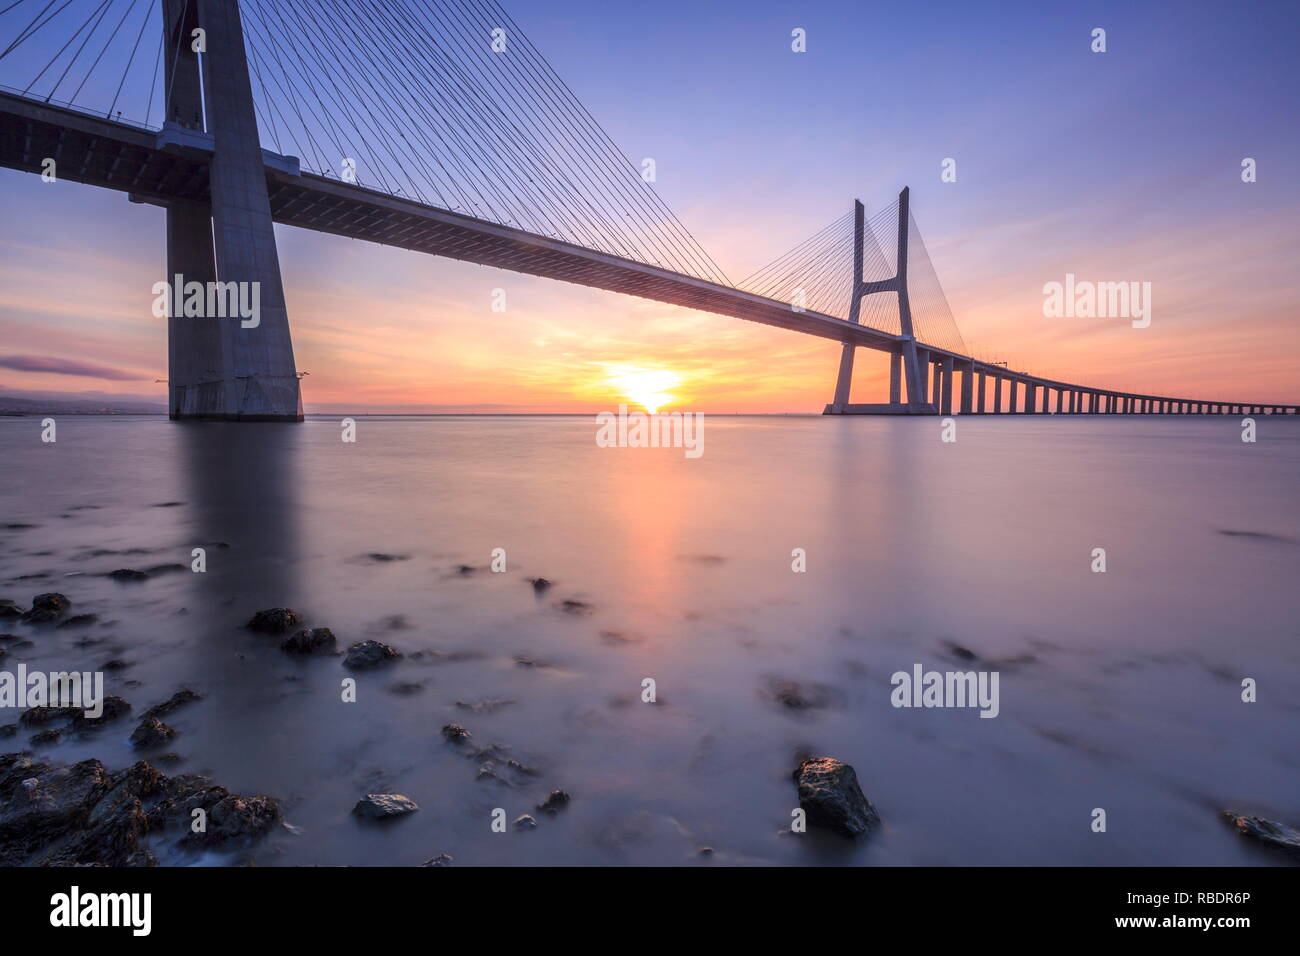 Les couleurs de l'aube sur le pont Vasco de Gama qui enjambe le Tage dans la région de Parque das NaÃ§Ãµes l'Europe Portugal Lisbonne Banque D'Images